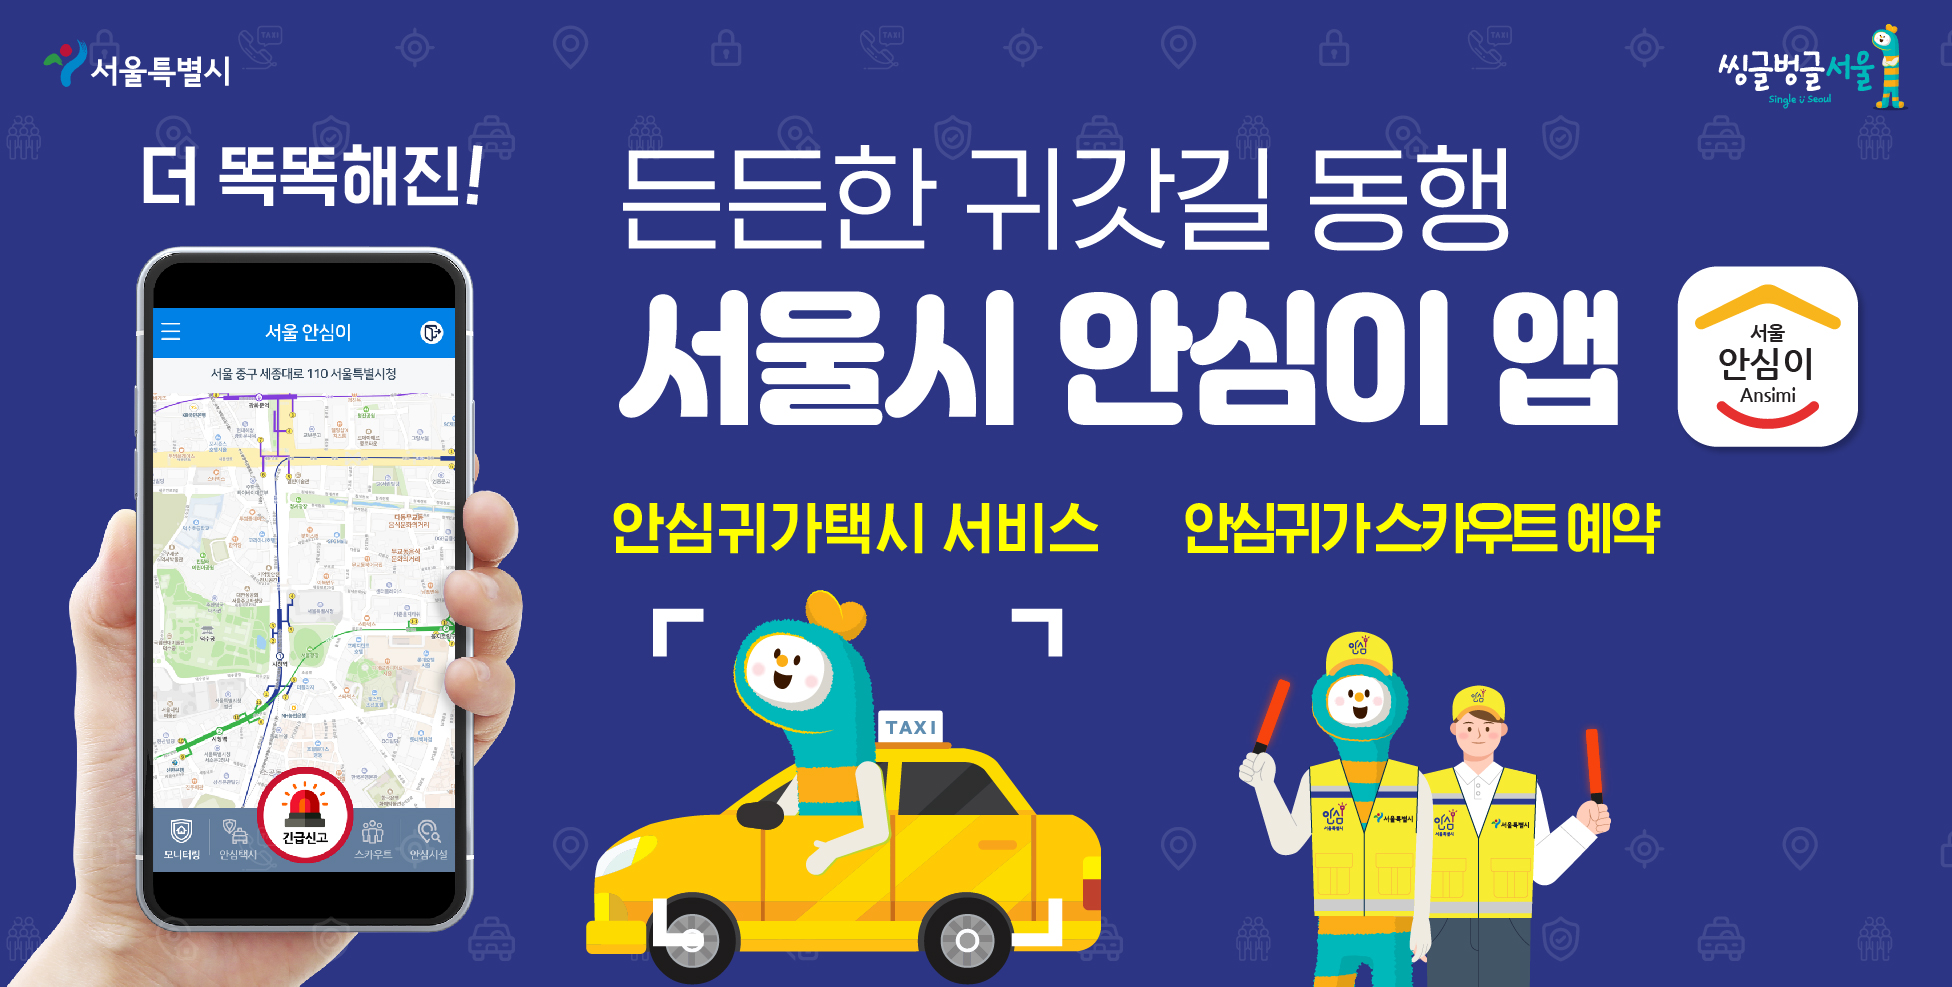 [서울시 소식] 든든한 귀갓길 동행 서울시 안심이 앱